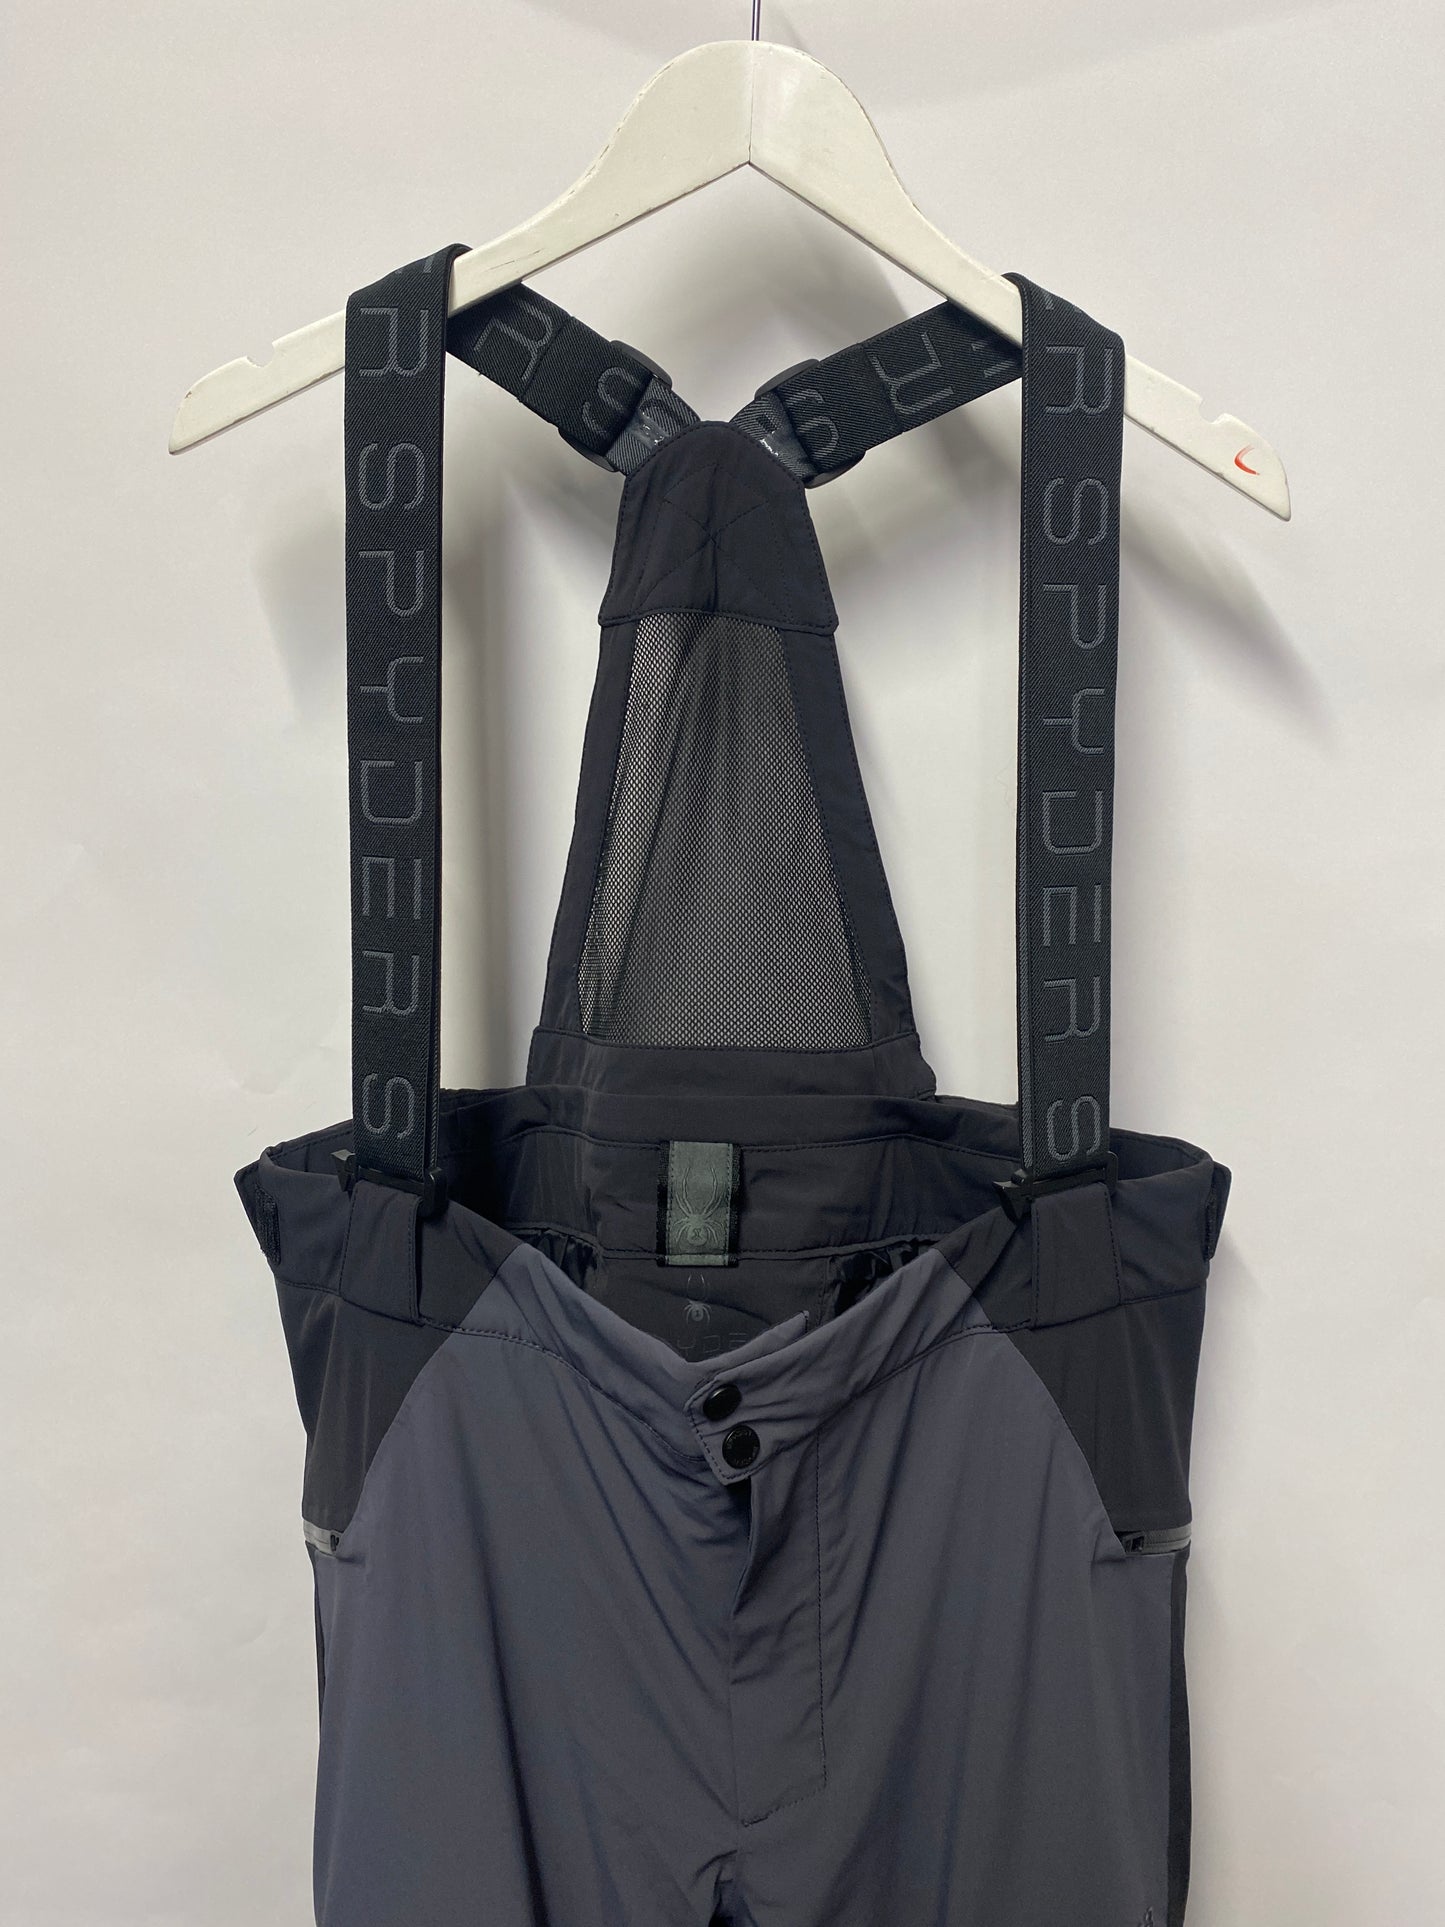 Spyder Grey and Black Primaloft Suspender Salopettes XXL